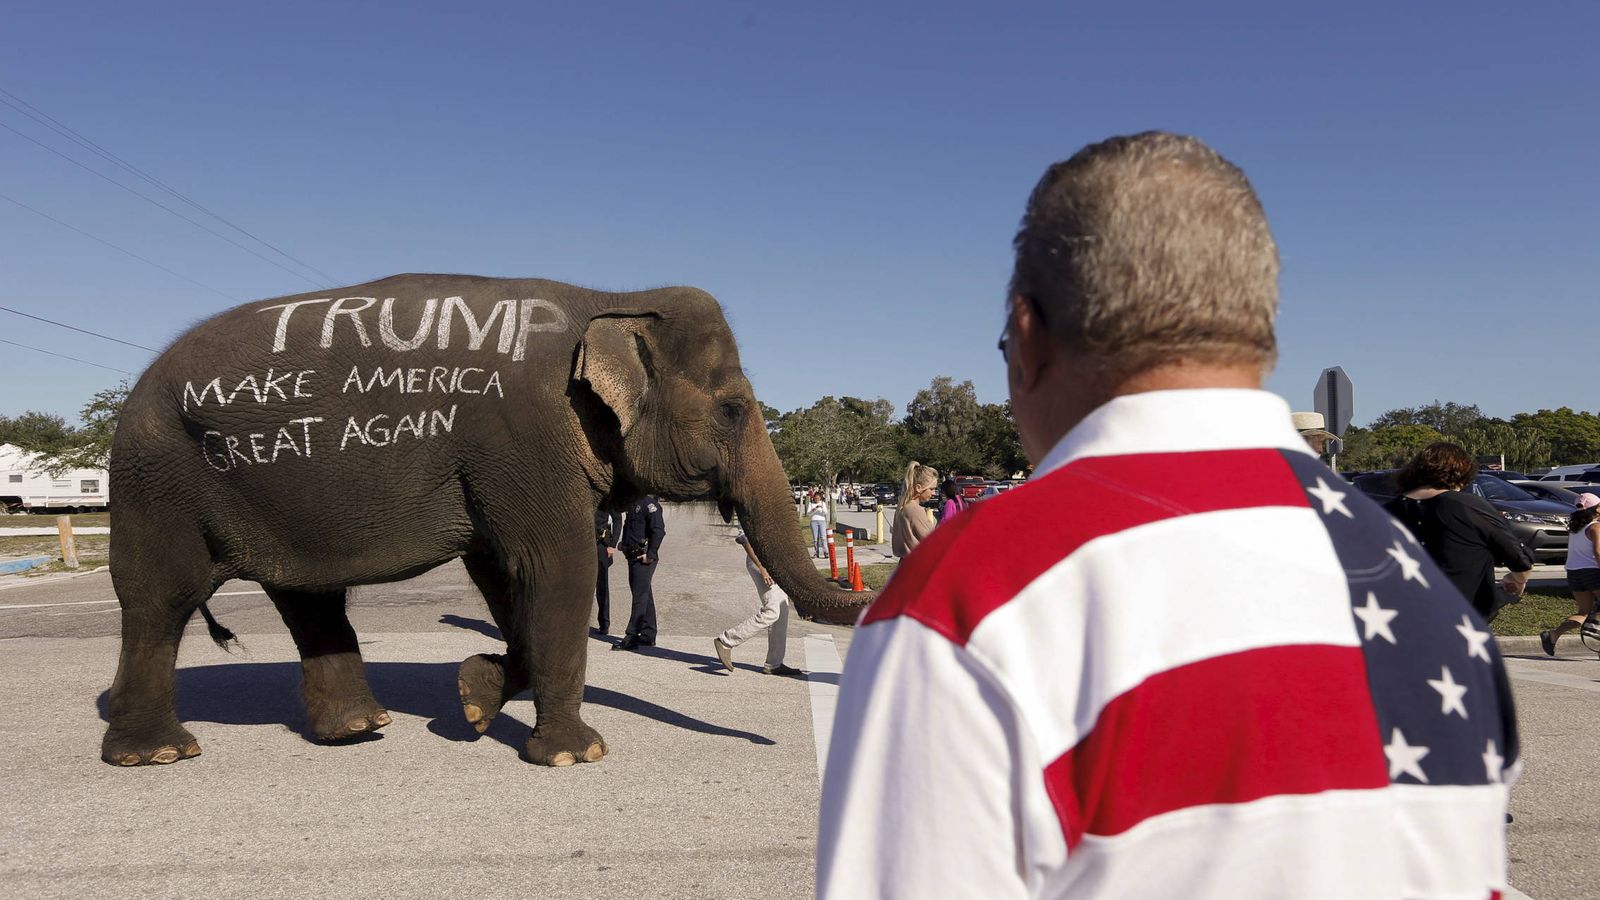 Foto: Partidarios de Donald Trump pasean un elefante, símbolo del Partido Republicano, en un acto en Sarasota, Florida, el 28 de noviembre de 2015 (Reuters)